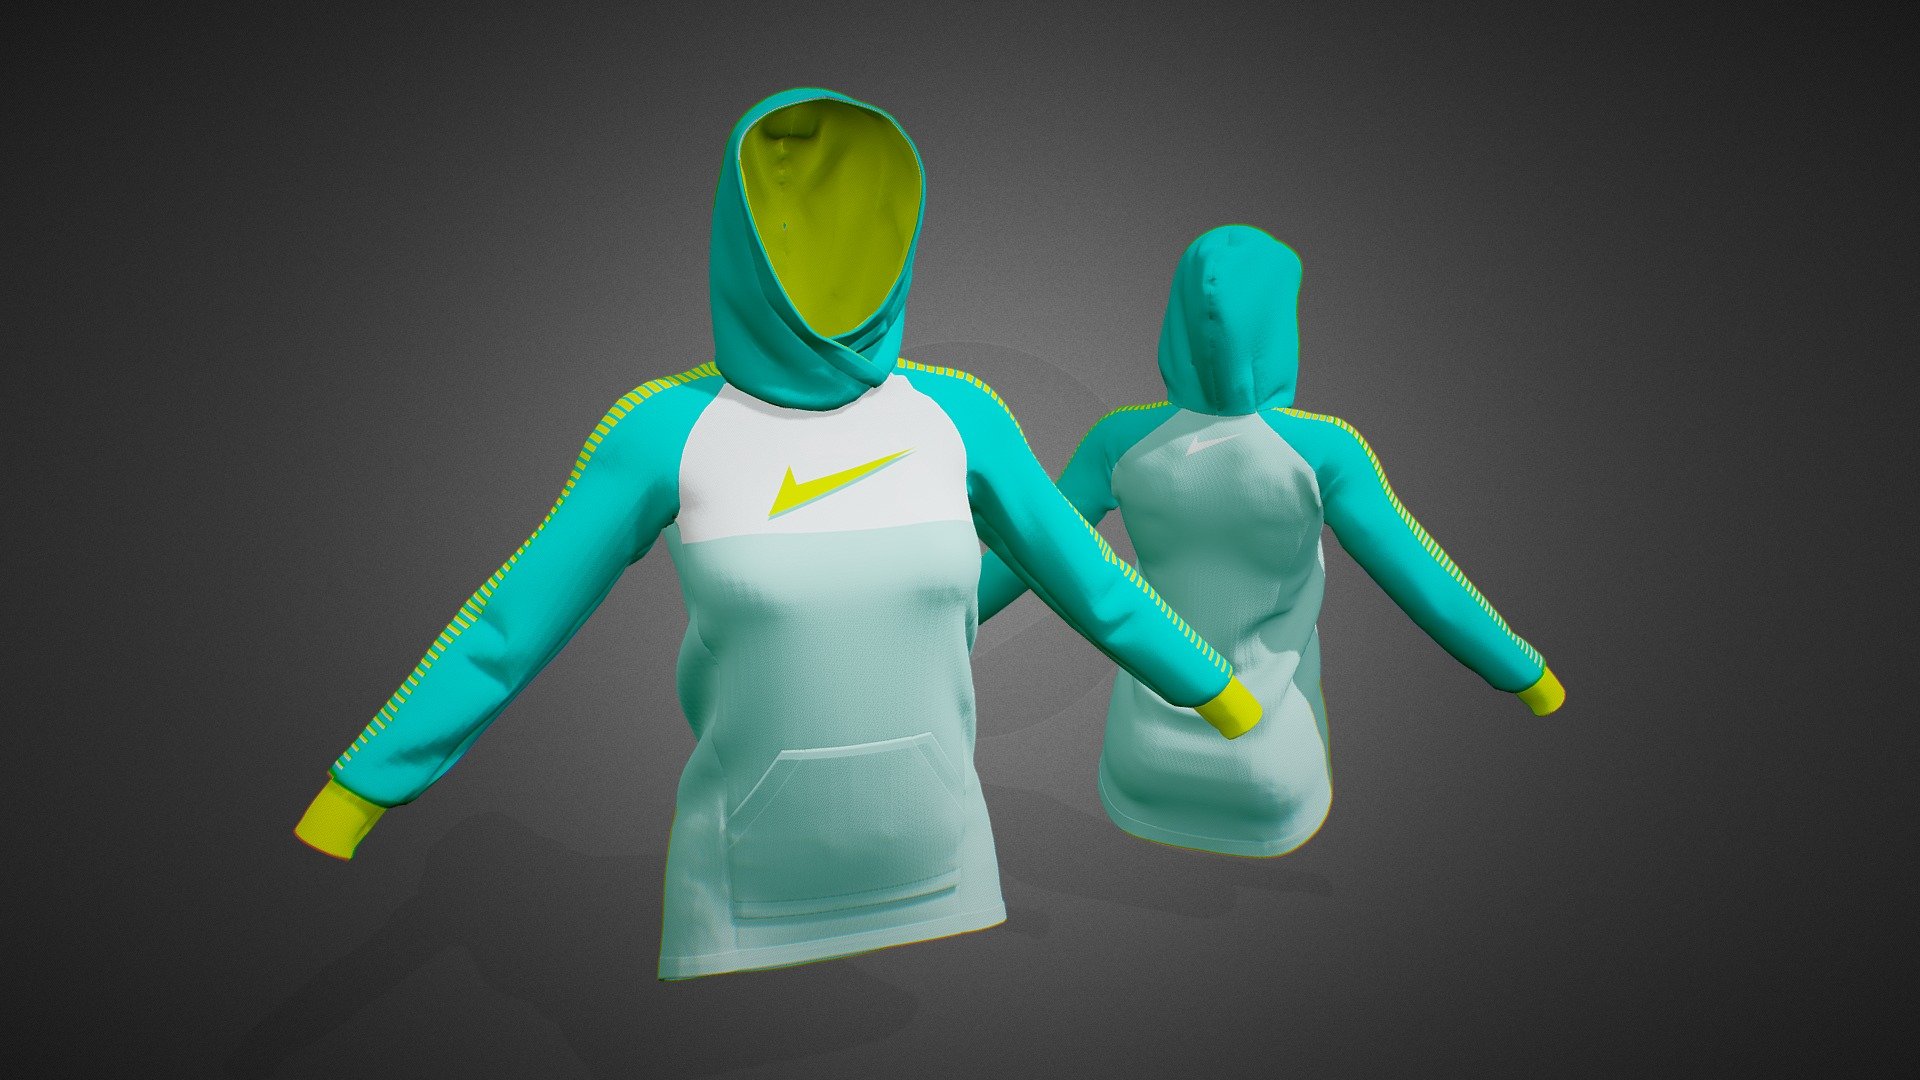 modèle 3D de Collection de vêtements de sport pour femmes 1 - TurboSquid  1593080